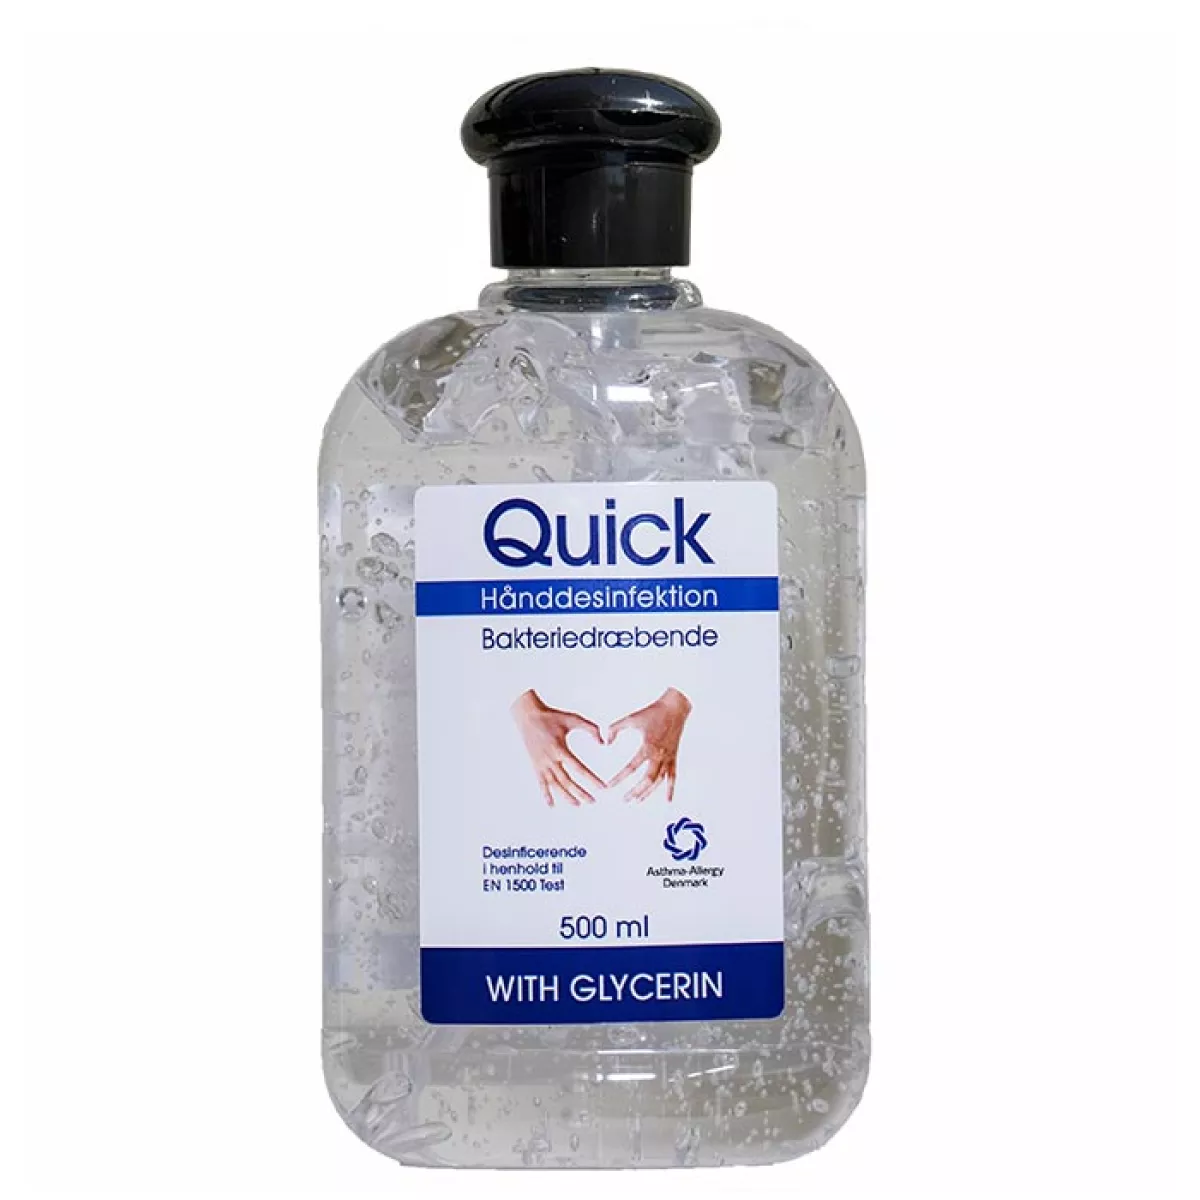 #1 - Quick Hånddesinfektion 75% (500 ml)